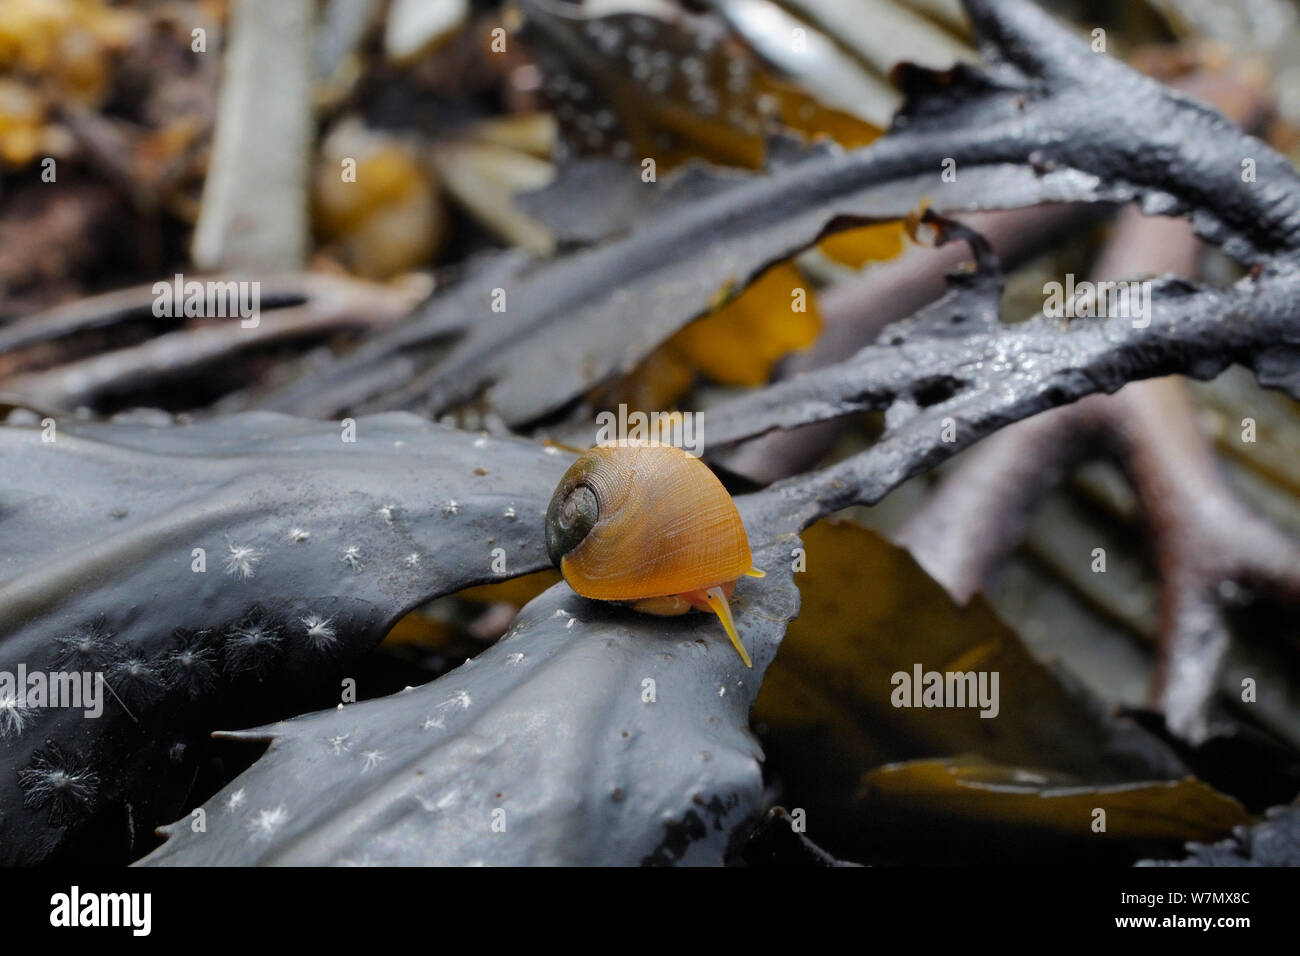 Télévision La pervenche (Littorina littoralis) de monter sur la crémaillère (Fucus serratus) découverte à marée basse, Crail, Écosse, Royaume-Uni, Juillet Banque D'Images